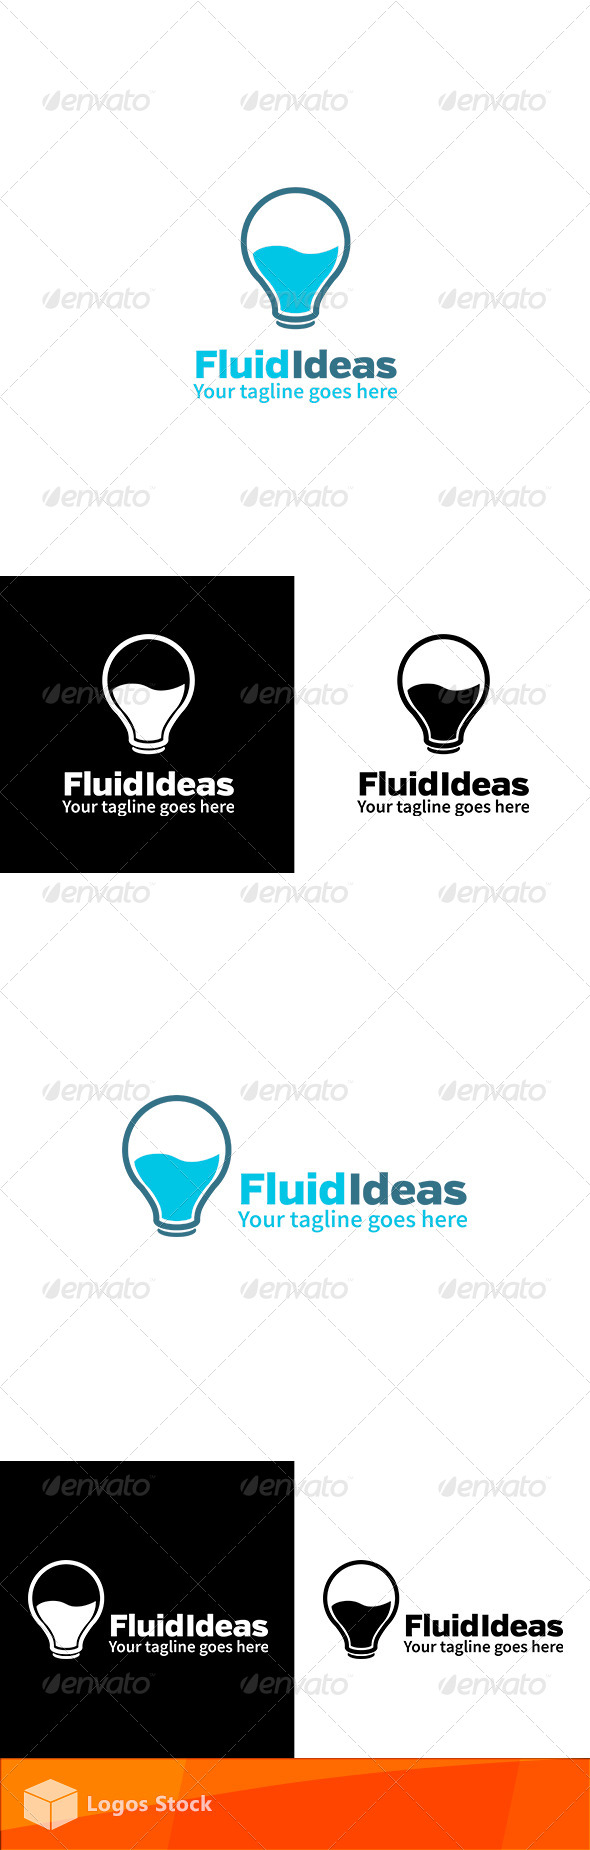 Creative Logo - Fluid Ideas